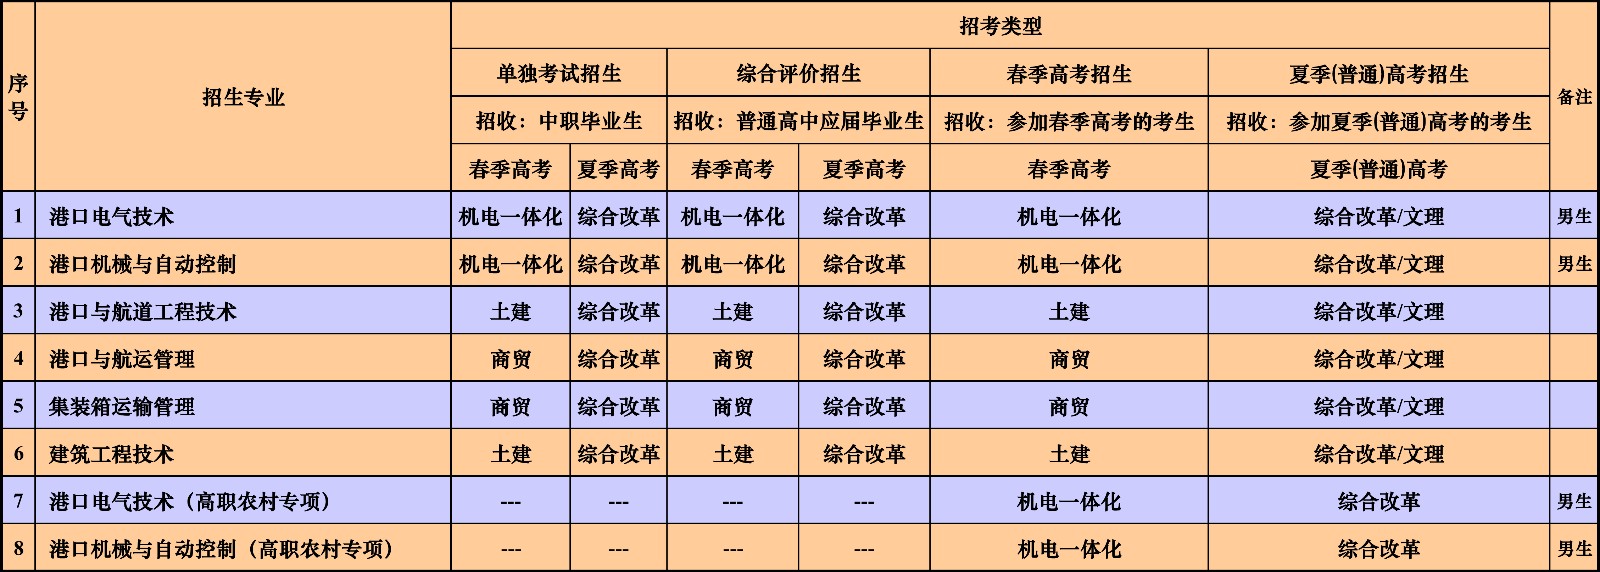 青岛港湾职业技术学院2020年招生专业及类型一览表-港口学院.jpg